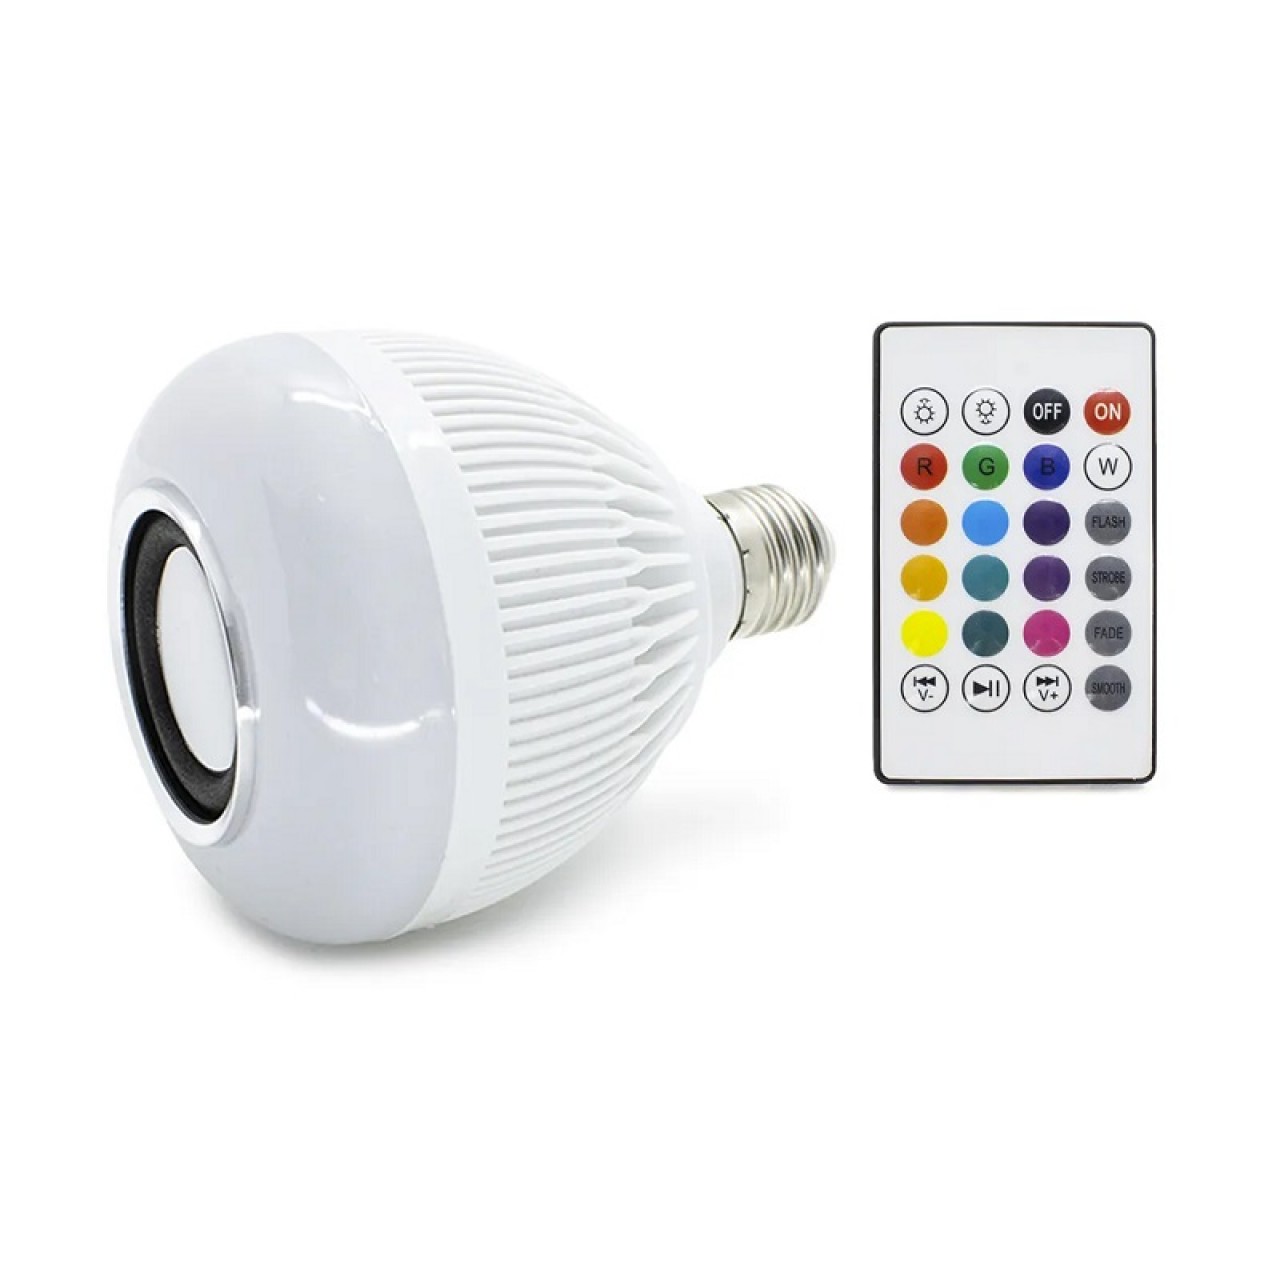 Λάμπα LED – Smart – Με ηχείο Bluetooth – WJ-L2 – 5907